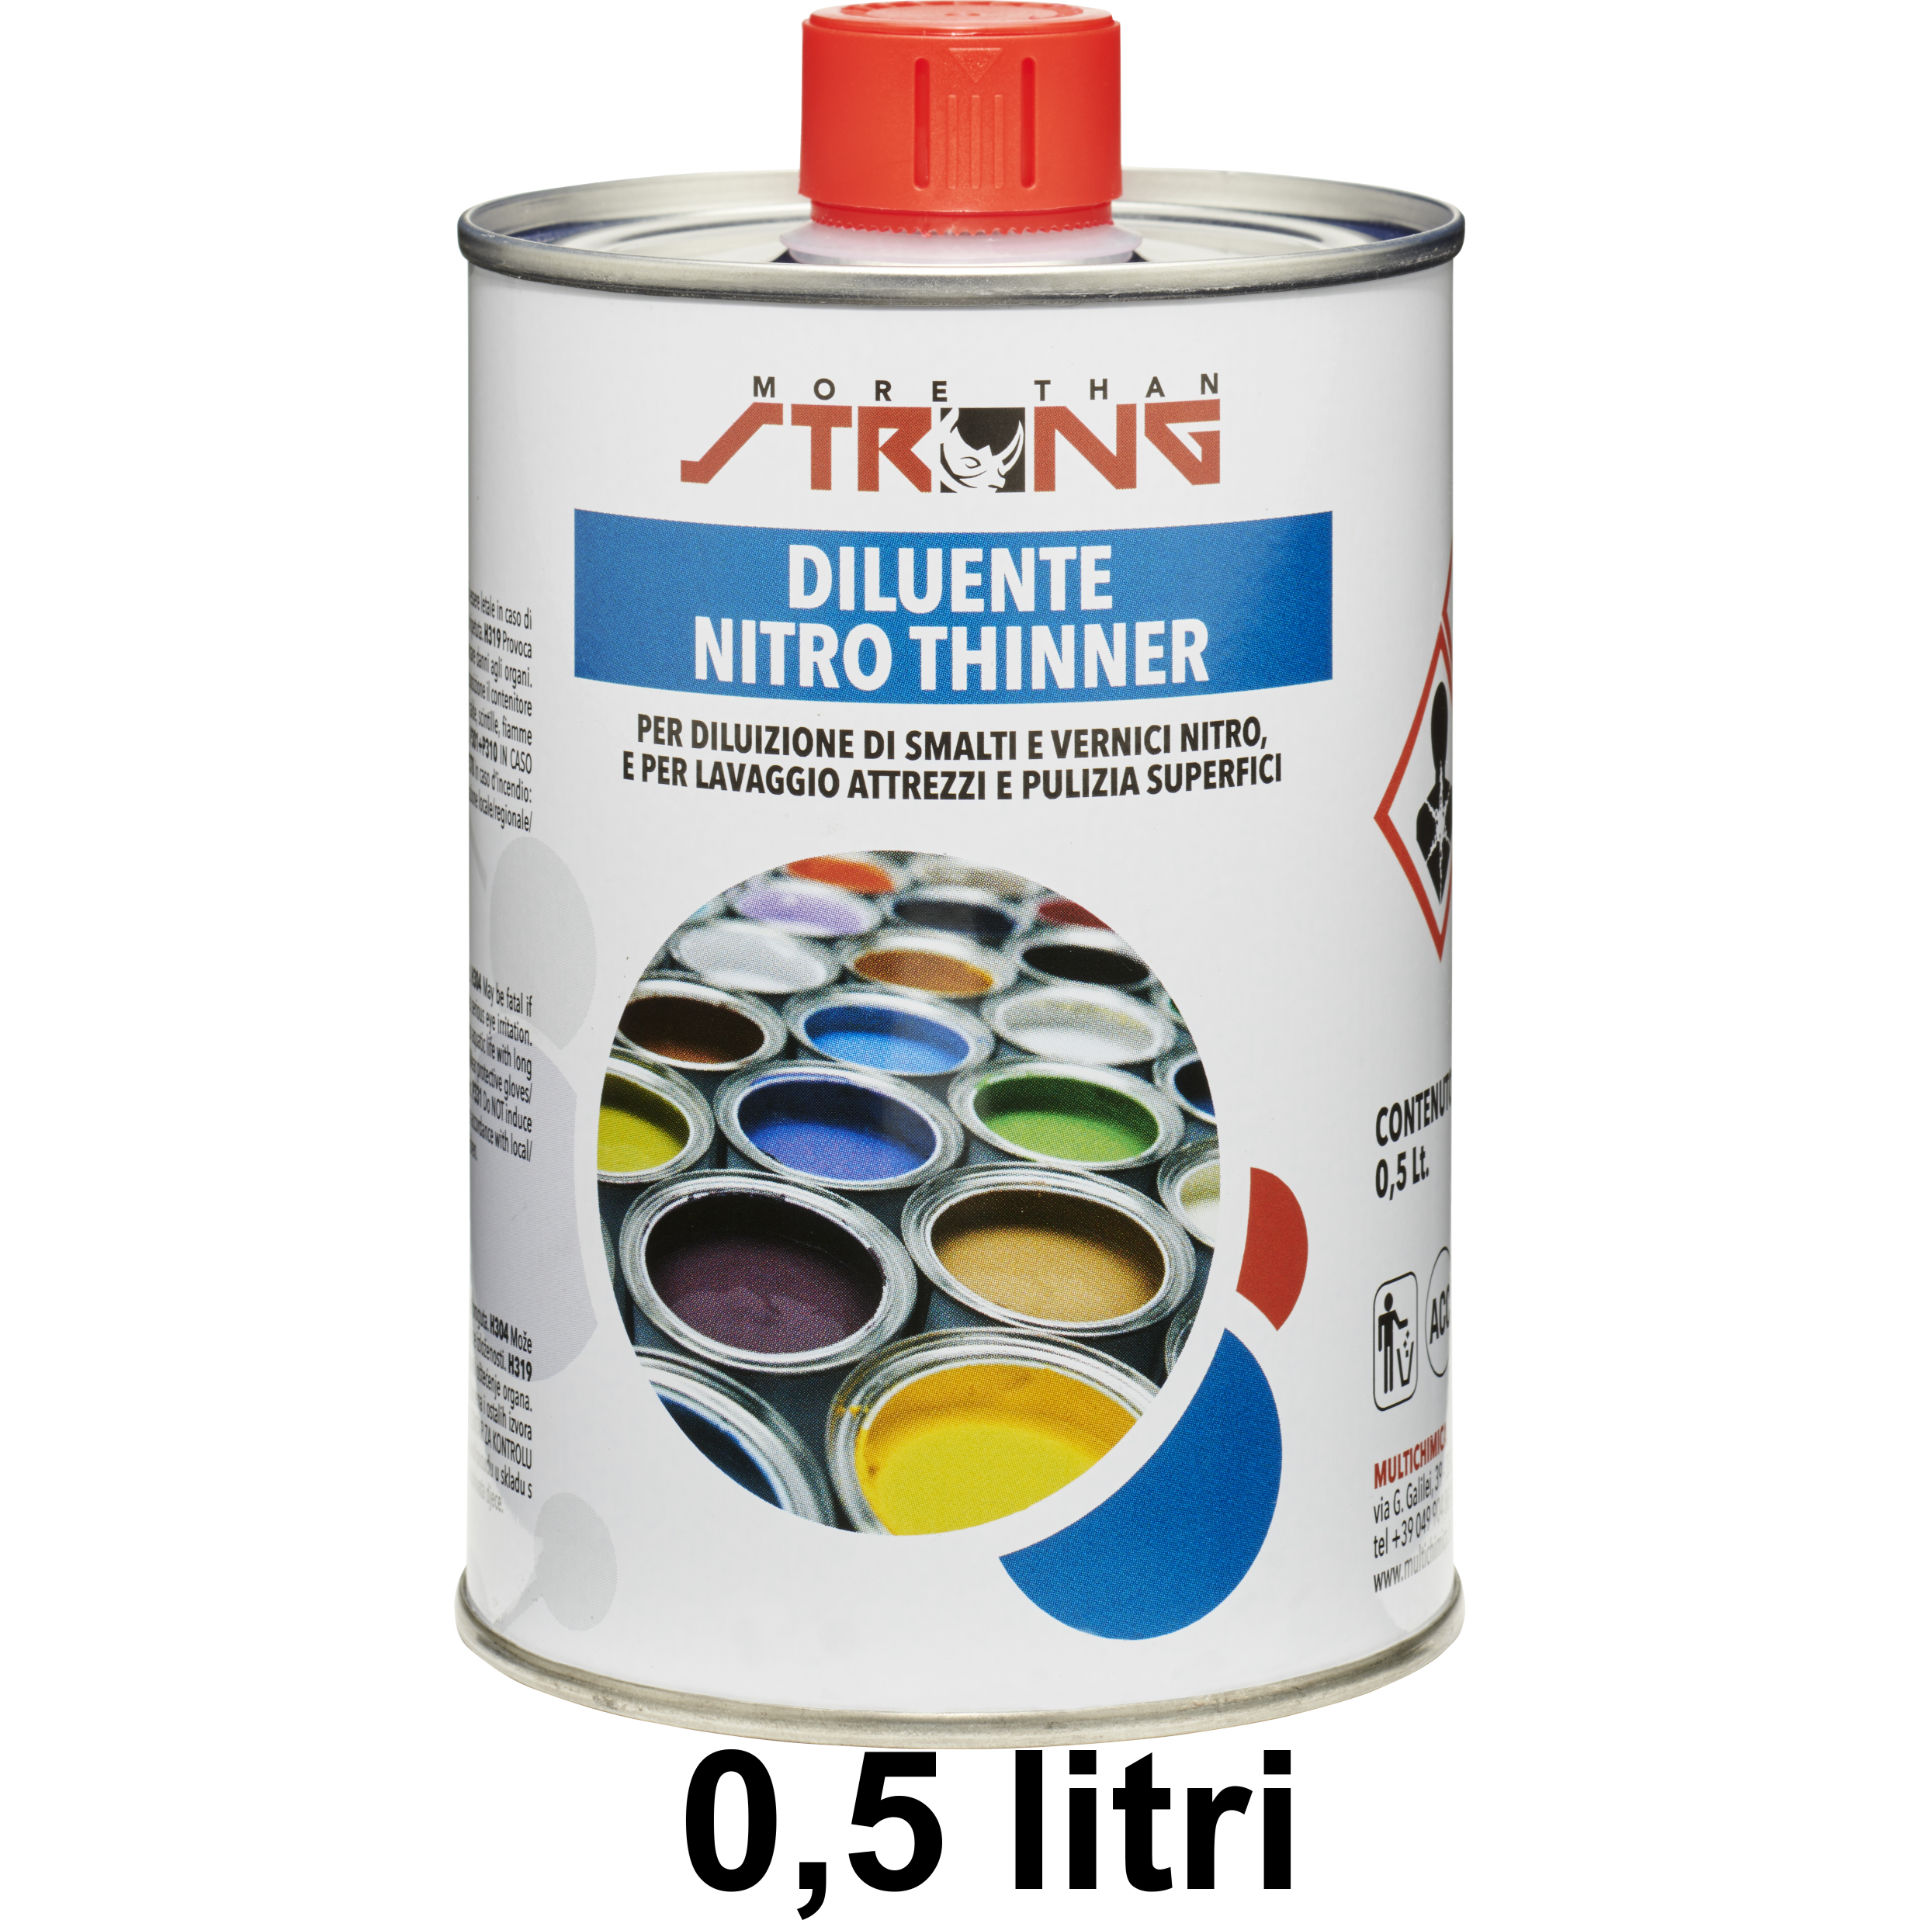 DILUENTE NITRO THINNER STRONG DA LT.1/2 (20X1/2)